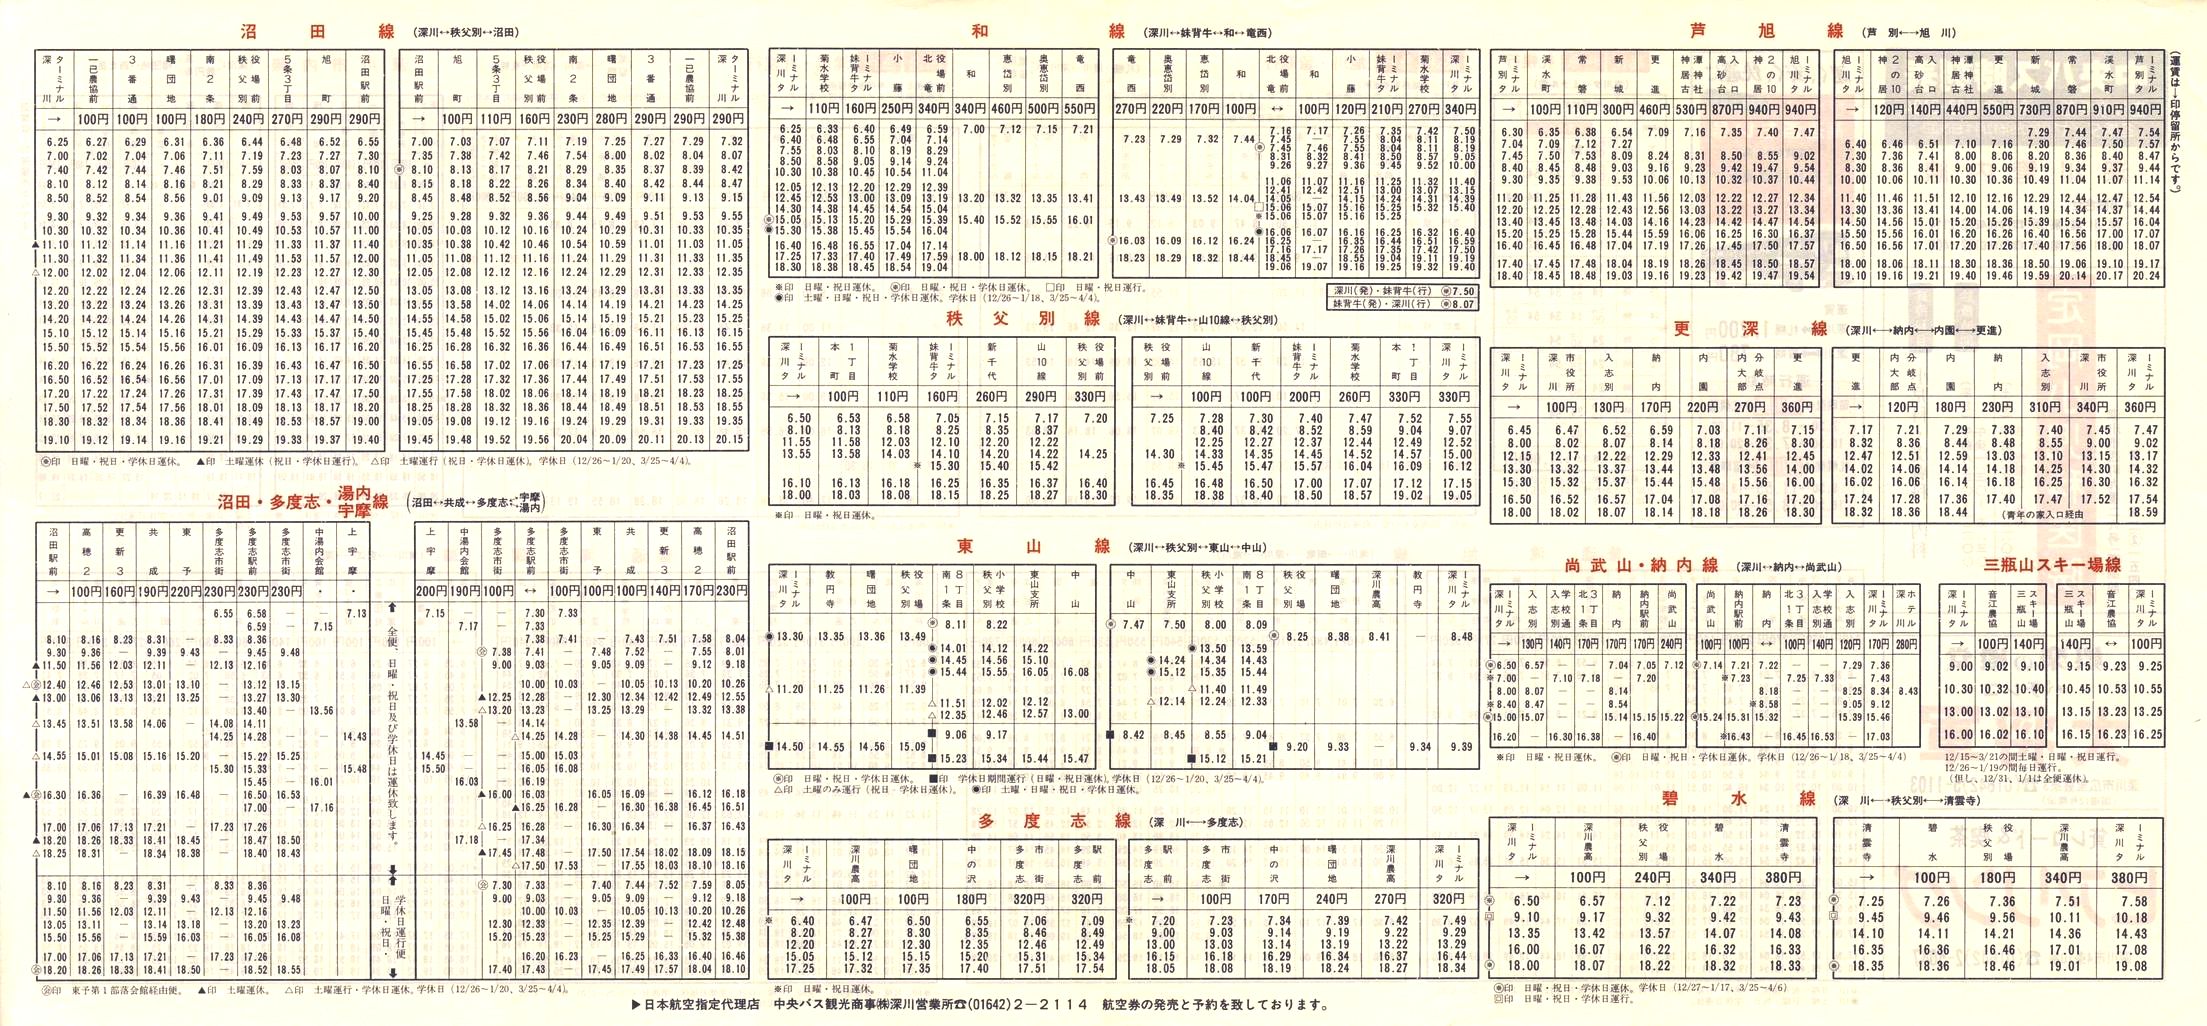 1984-12-01改正_北海道中央バス(空知)_深川管内線時刻表裏面